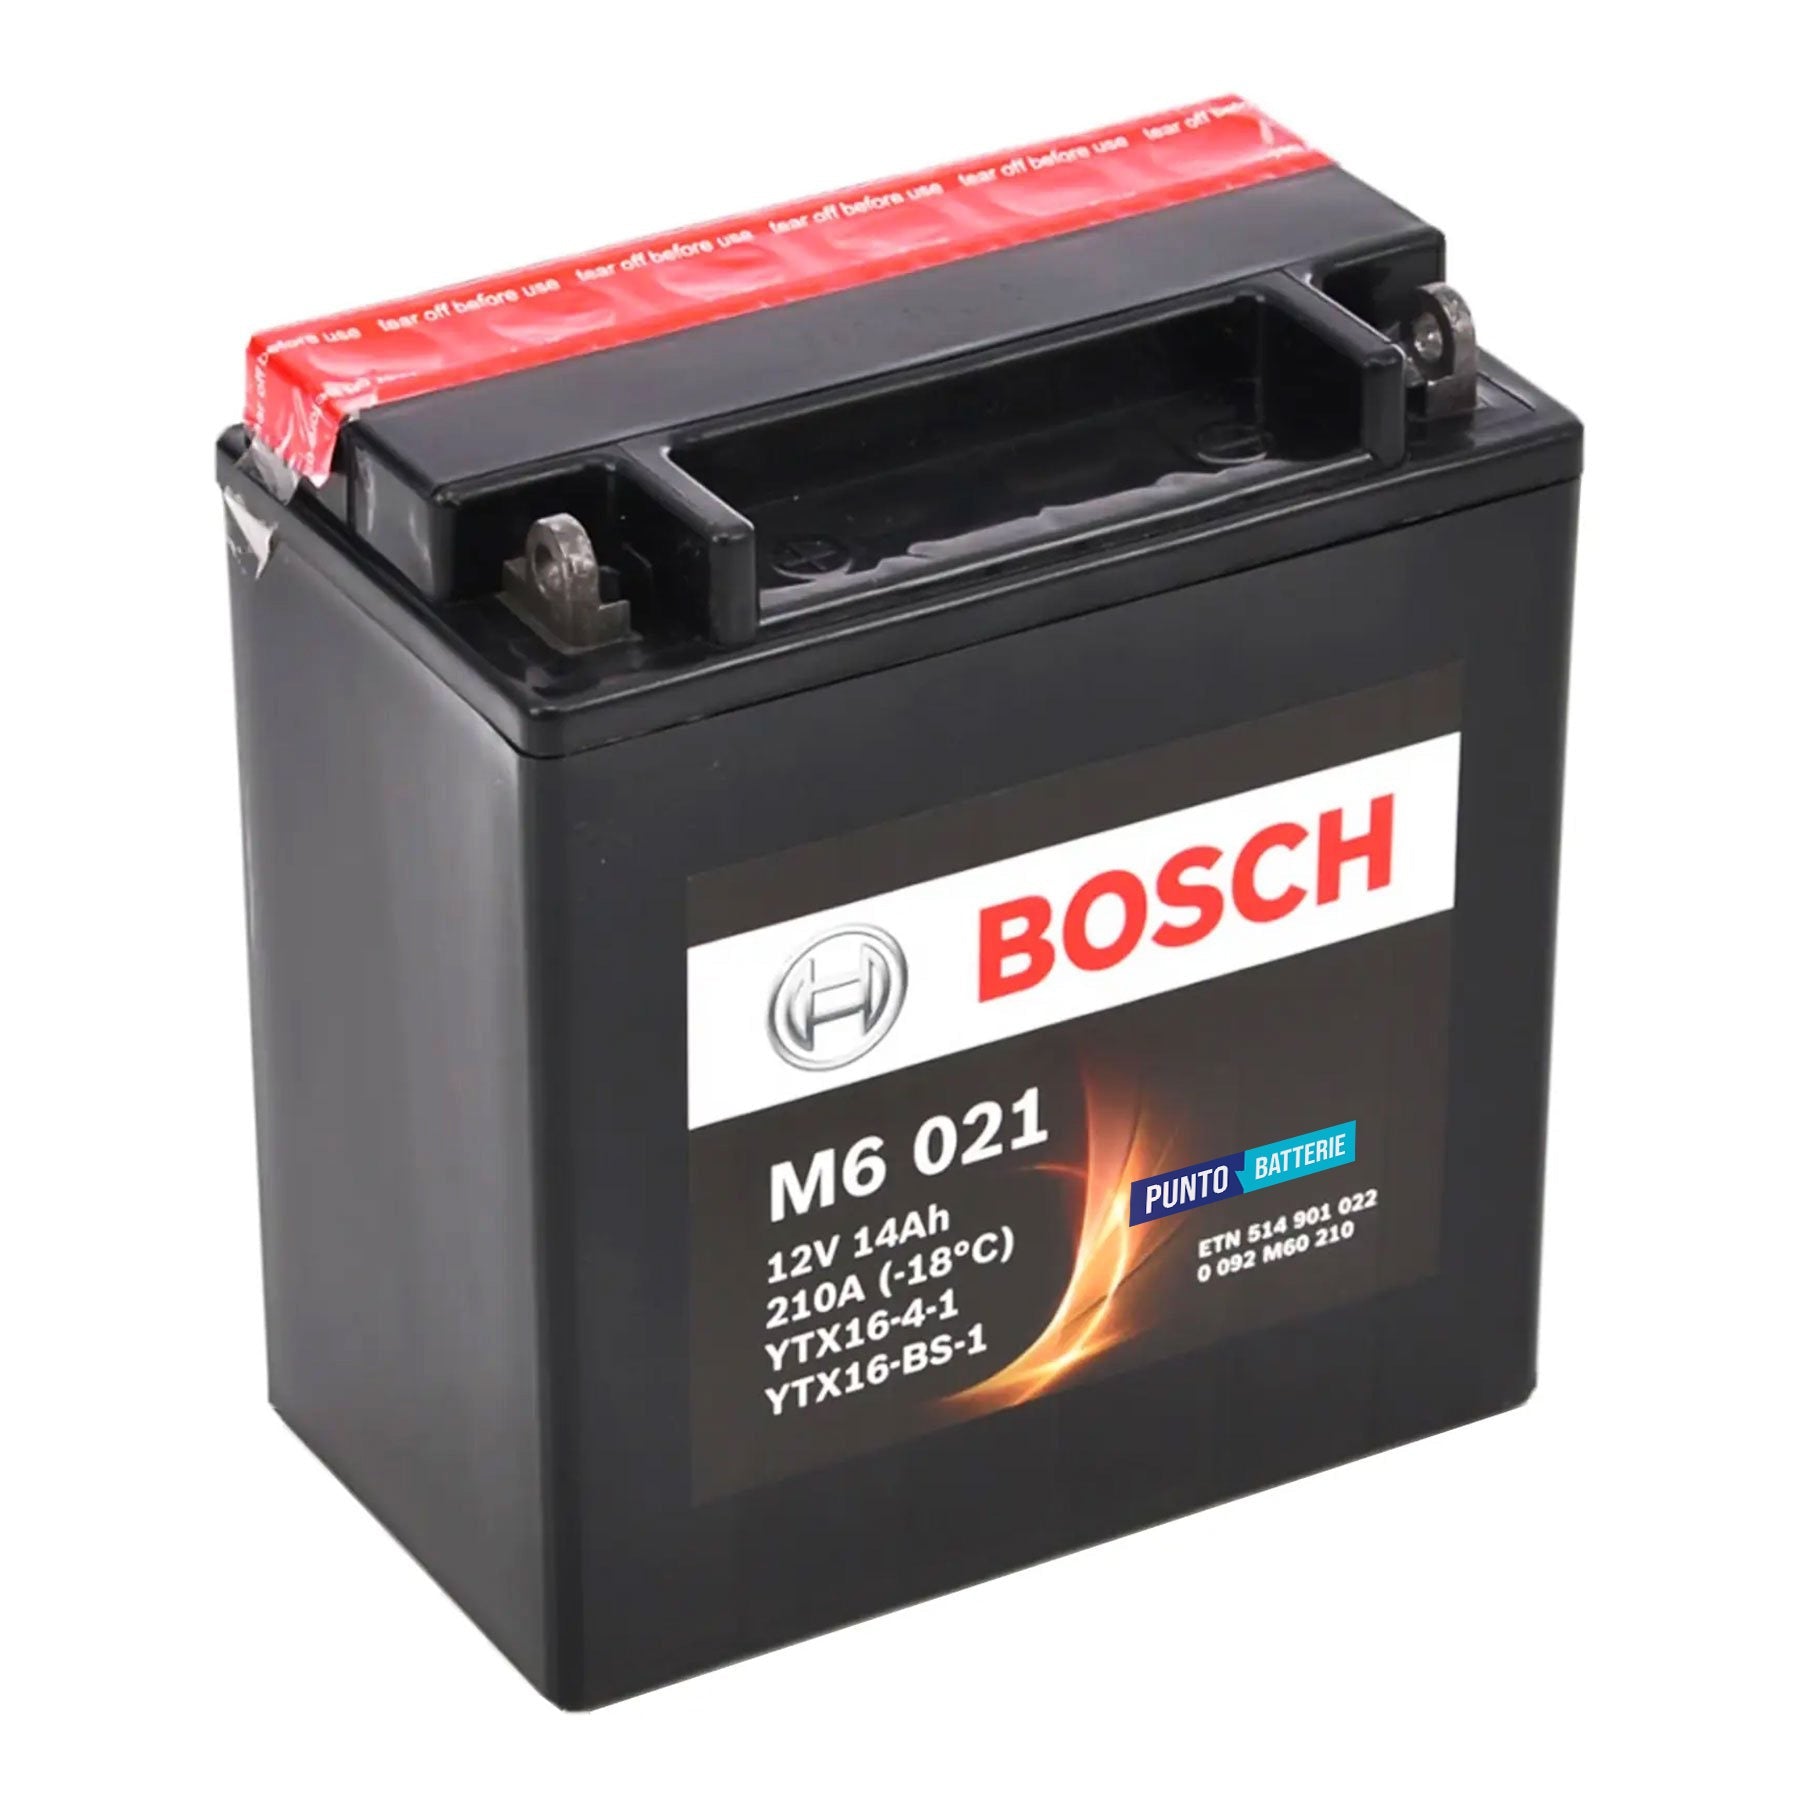 Batteria originale Bosch M6 M6021, dimensioni 150 x 87 x 161, polo positivo a sinistra, 12 volt, 14 amperora, 210 ampere. Batteria per moto, scooter e powersport.